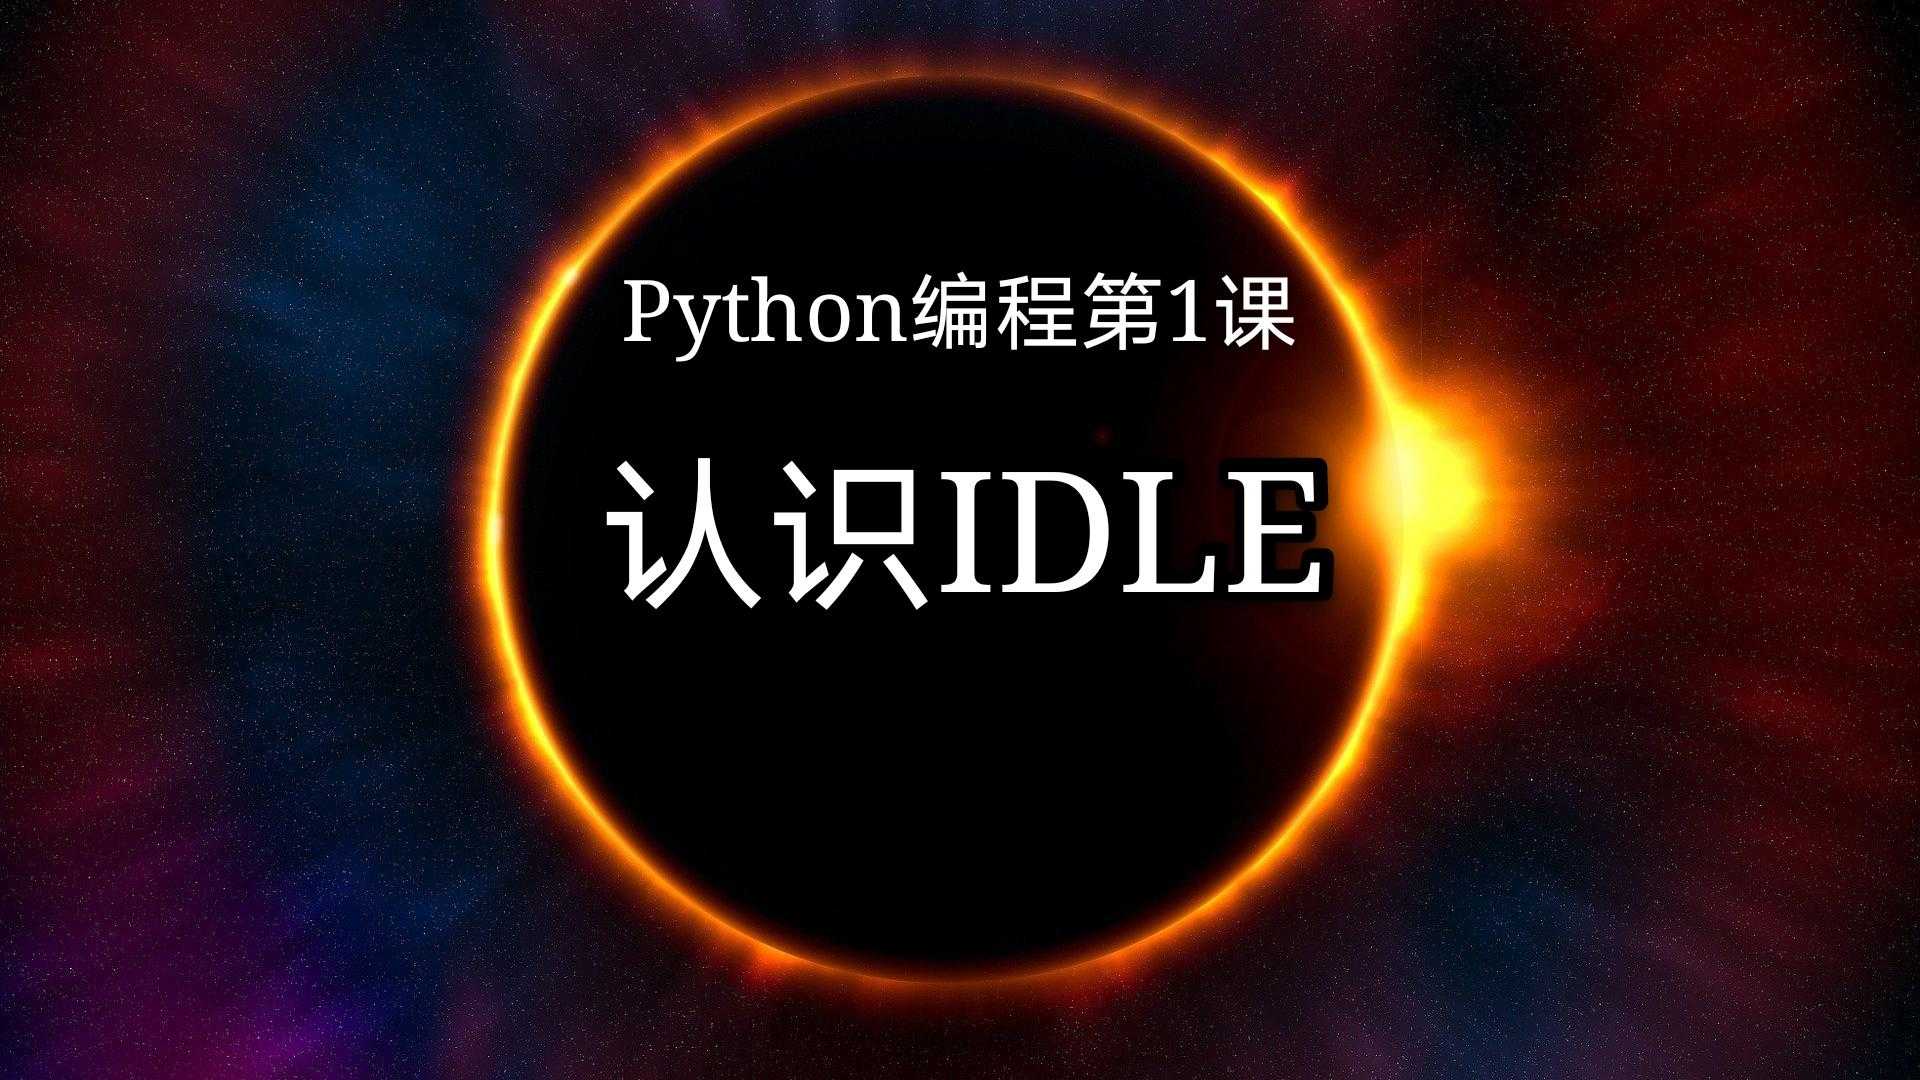 用idle编写python文件_python图形化编程「建议收藏」